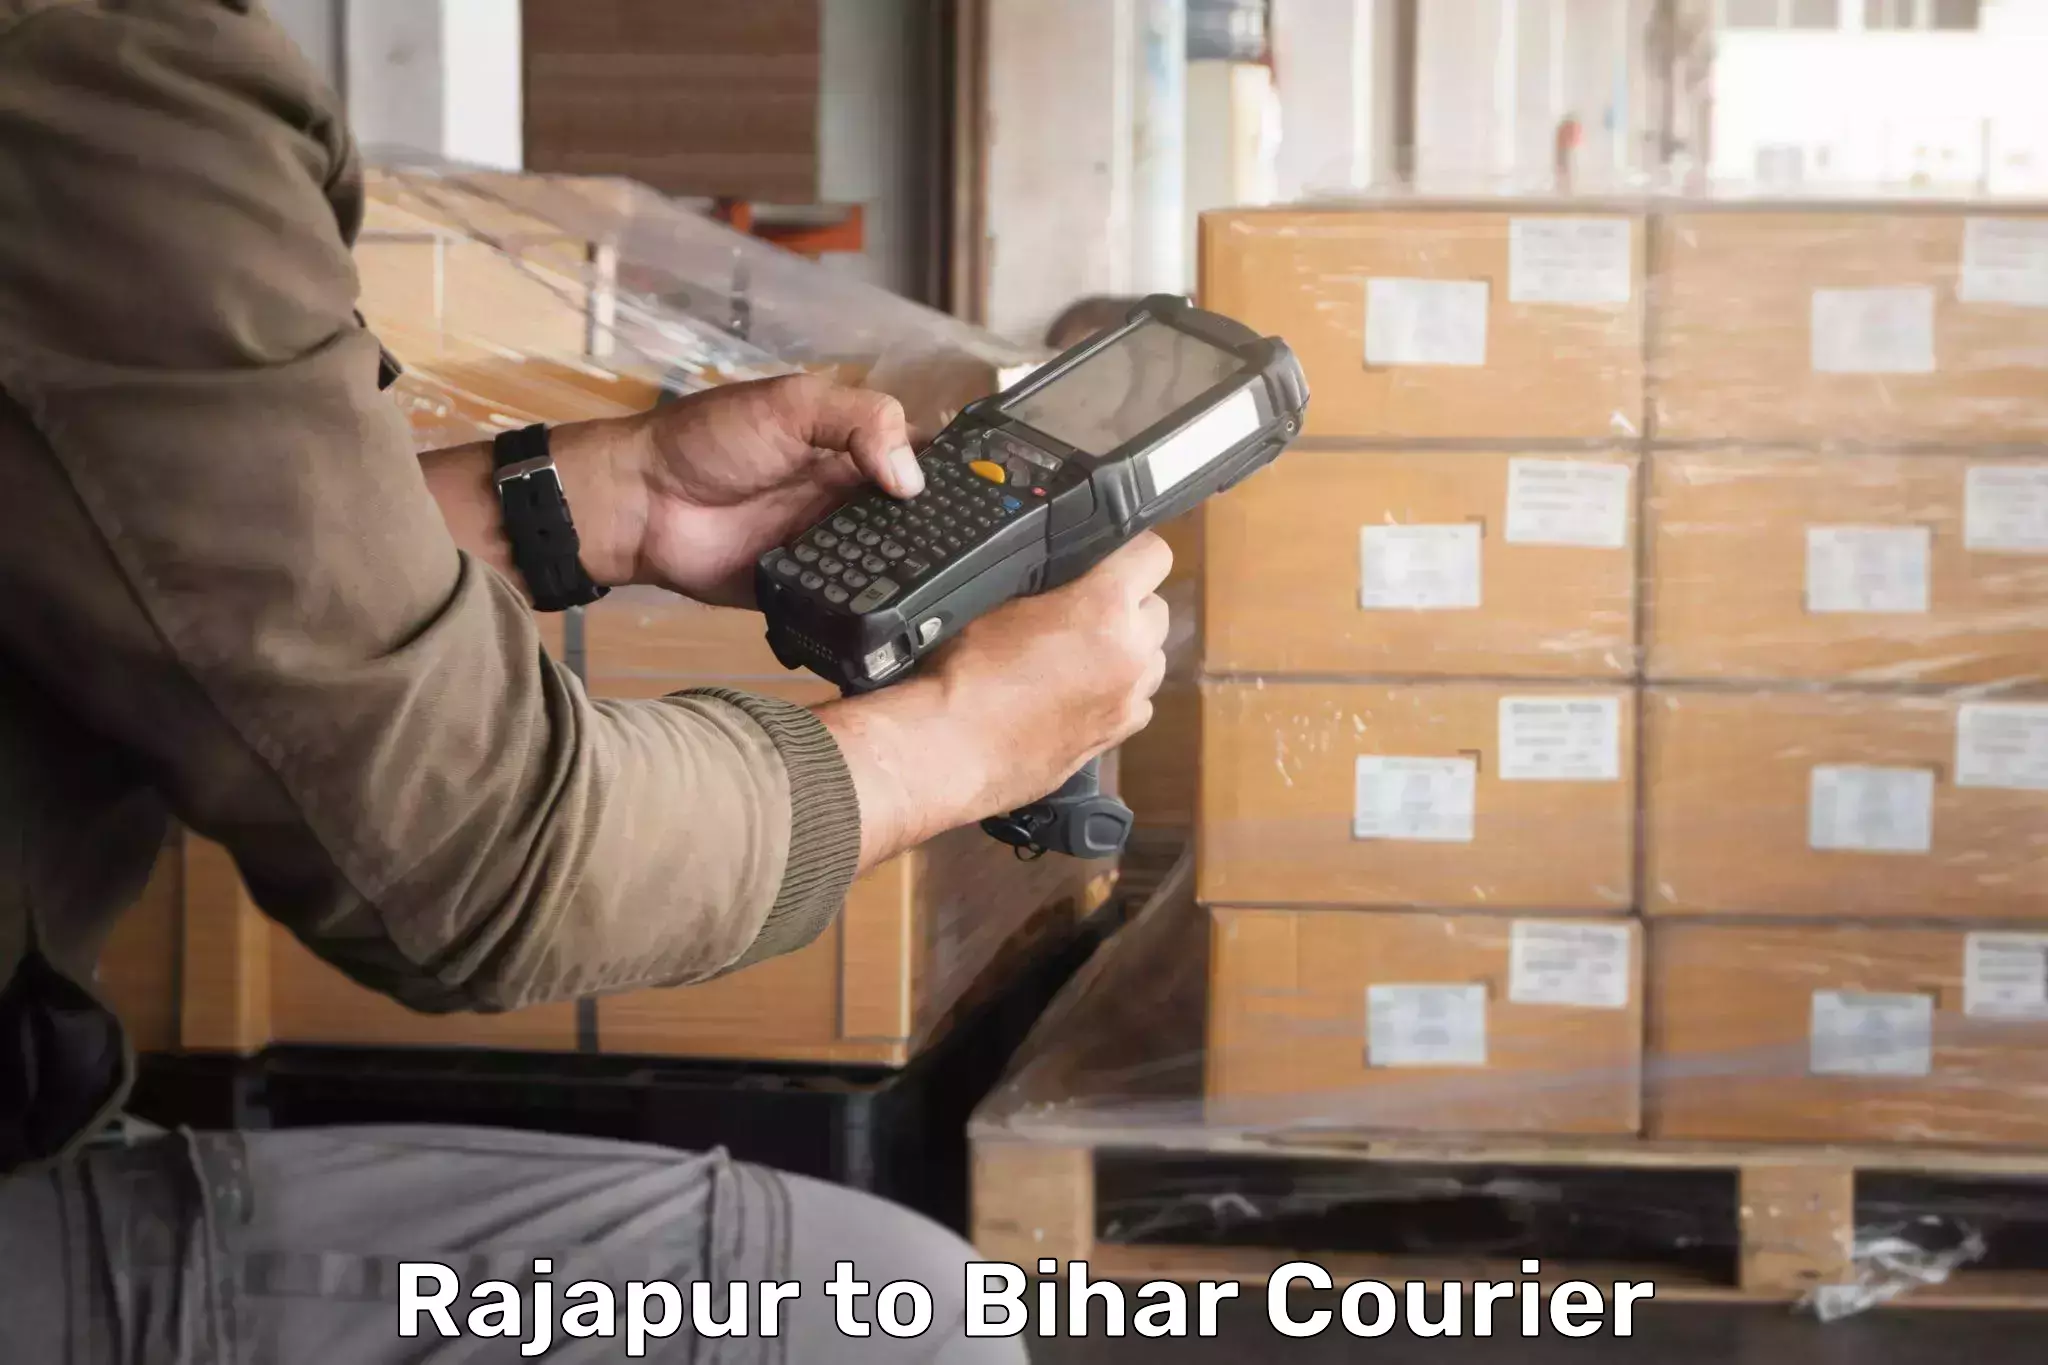 Punctual parcel services Rajapur to Patna